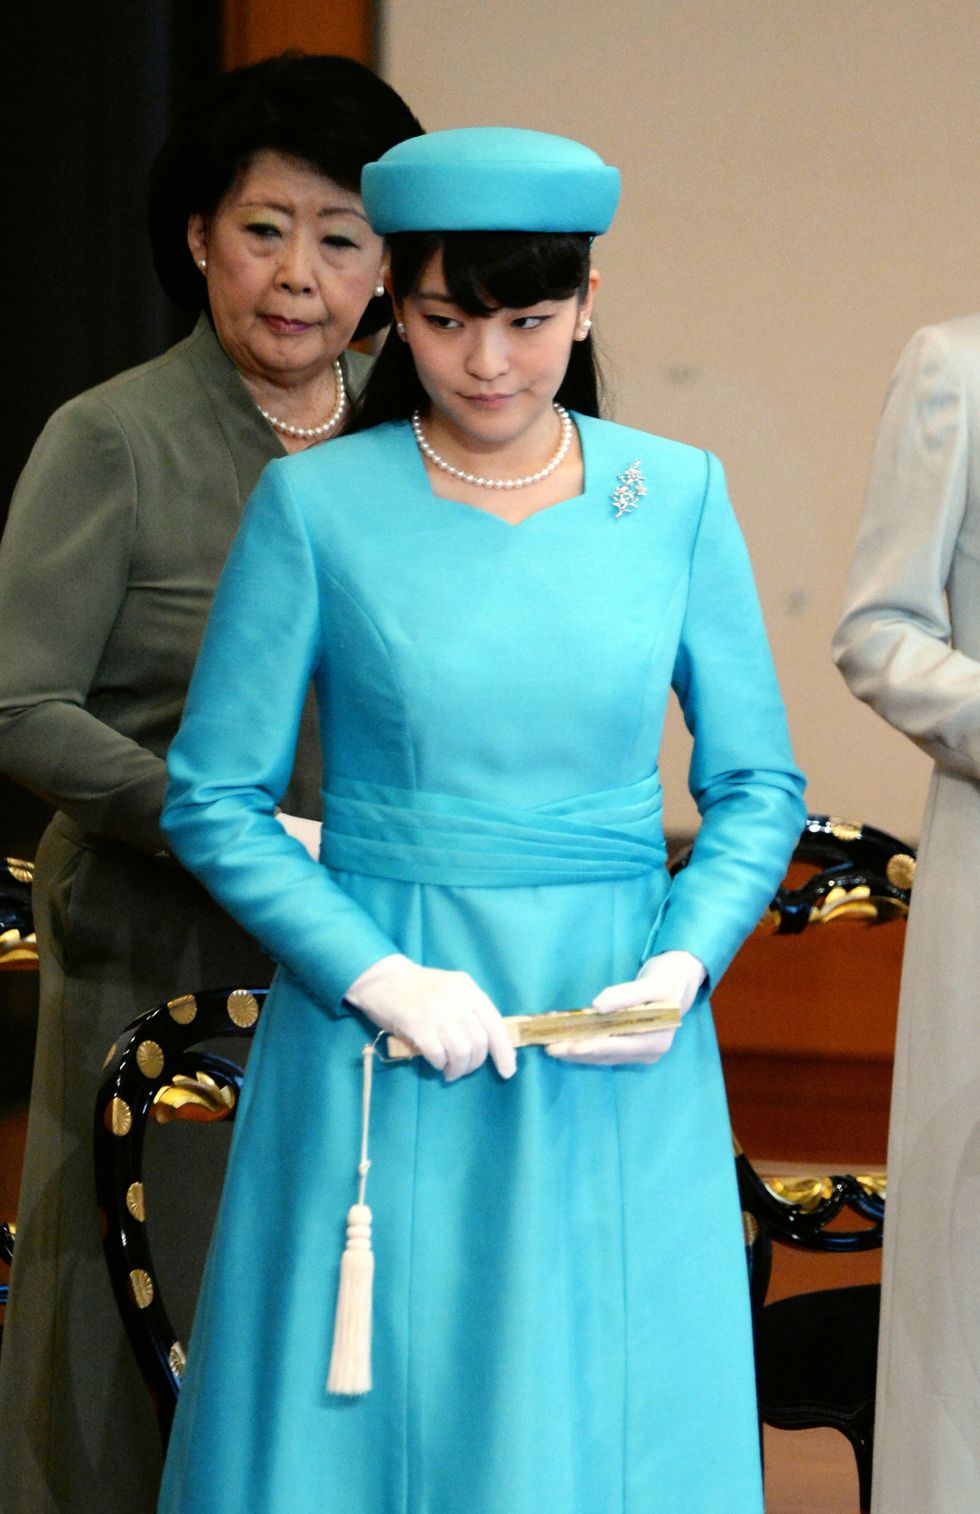 <p>
La nipote dell'Imperatore&nbsp;Akihito e dell'Imperatrice&nbsp;Michiko è stata soprannominata la&nbsp;Duchessa di&nbsp;Cambridge giapponese per il suo gusto nel vestire.L'anno scorso, la principessa venticinquenne ha preso un master&nbsp;in gestione&nbsp;dei musei&nbsp;all'università di&nbsp;Leicester in Inghilterra.<span class="redactor-invisible-space" data-verified="redactor" data-redactor-tag="span" data-redactor-class="redactor-invisible-space"></span></p>